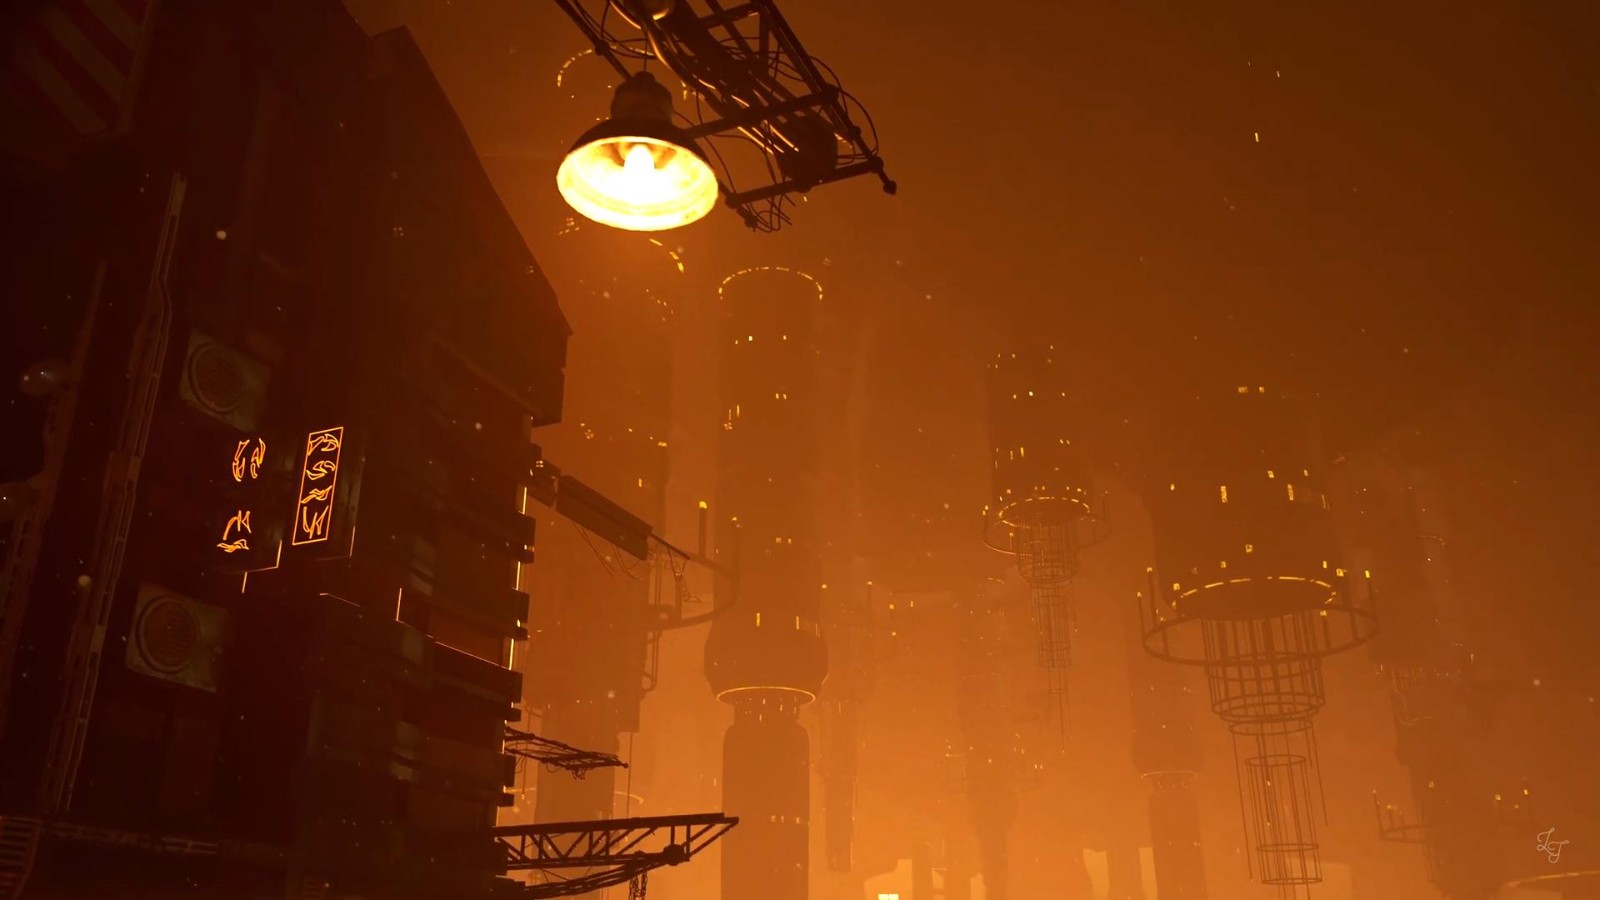 虛幻5引擎重製《質量效應3》奧米茄場景 效果驚人